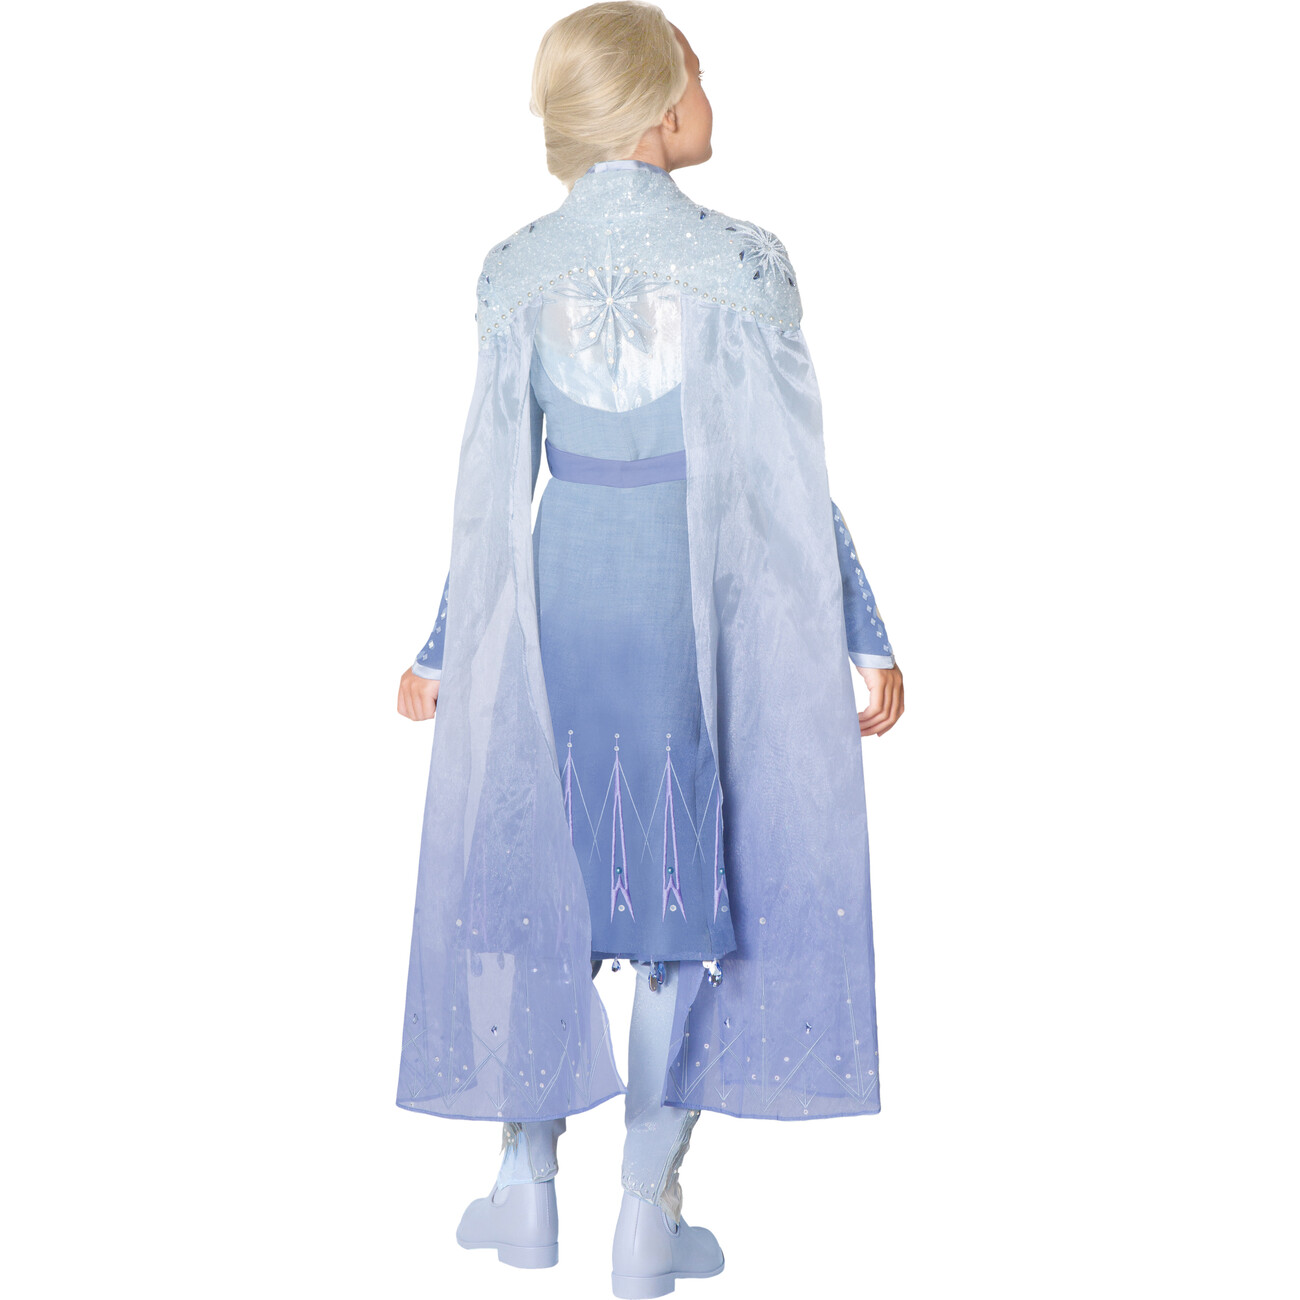 Disney Frozen II Elsa Costume - A Leading Role Kids